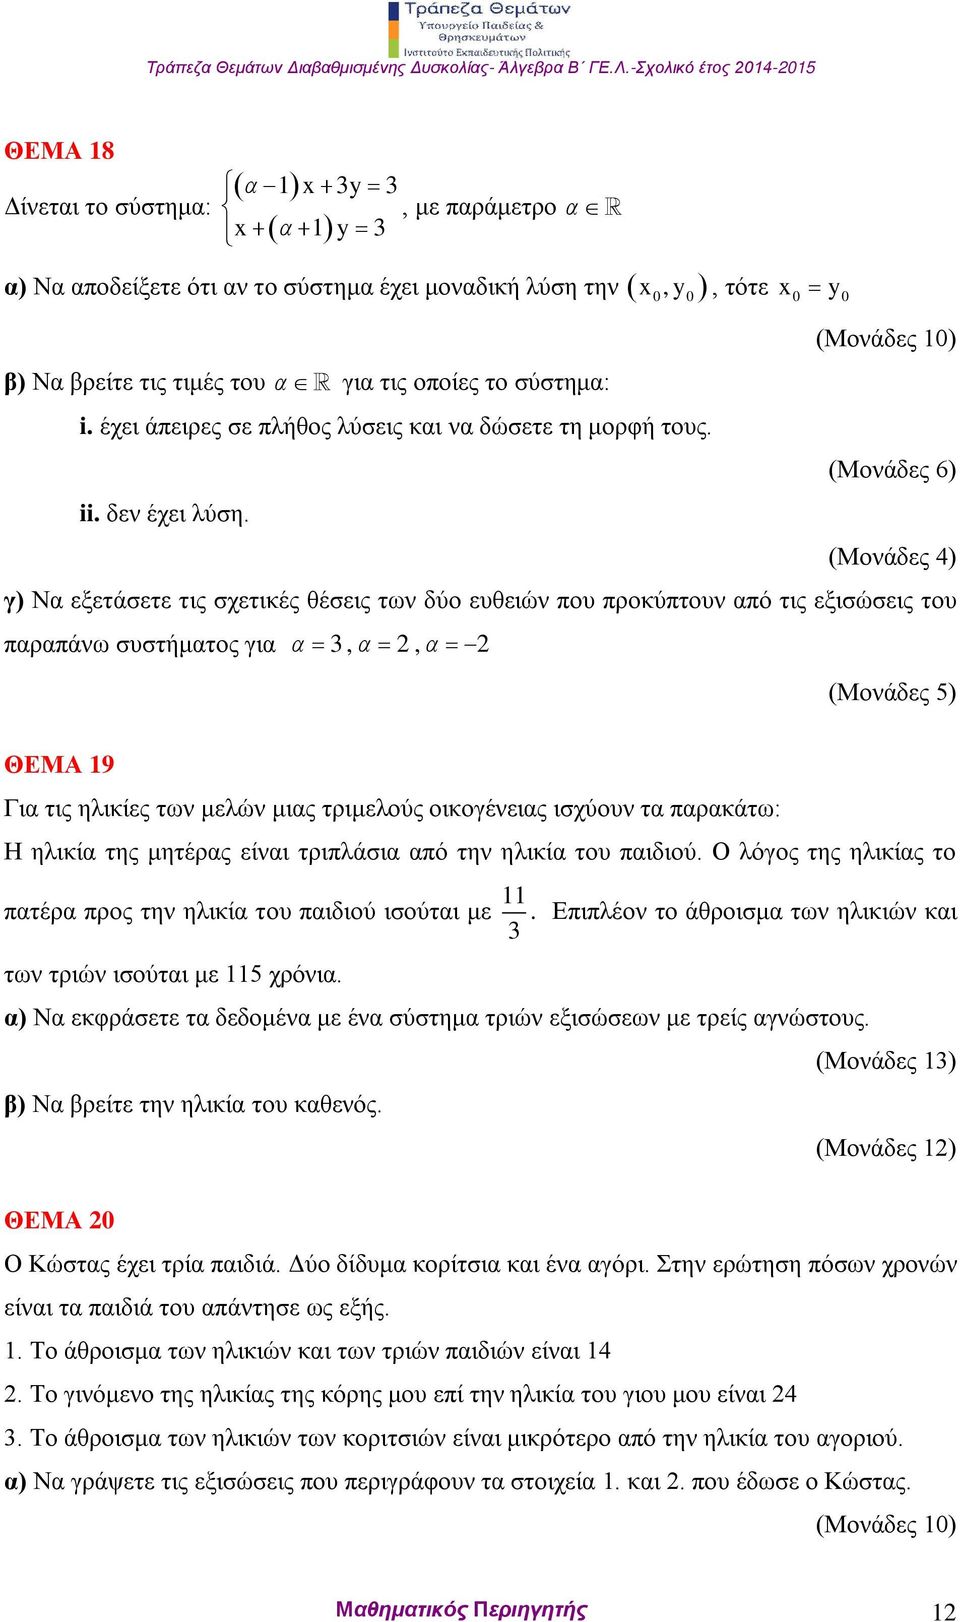 x, y, τότε x0 y0 (Μονάδες 6) (Μονάδες 4) γ) Να εξετάσετε τις σχετικές θέσεις των δύο ευθειών που προκύπτουν από τις εξισώσεις του παραπάνω συστήματος για 3,, (Μονάδες 5) ΘΕΜΑ 19 Για τις ηλικίες των